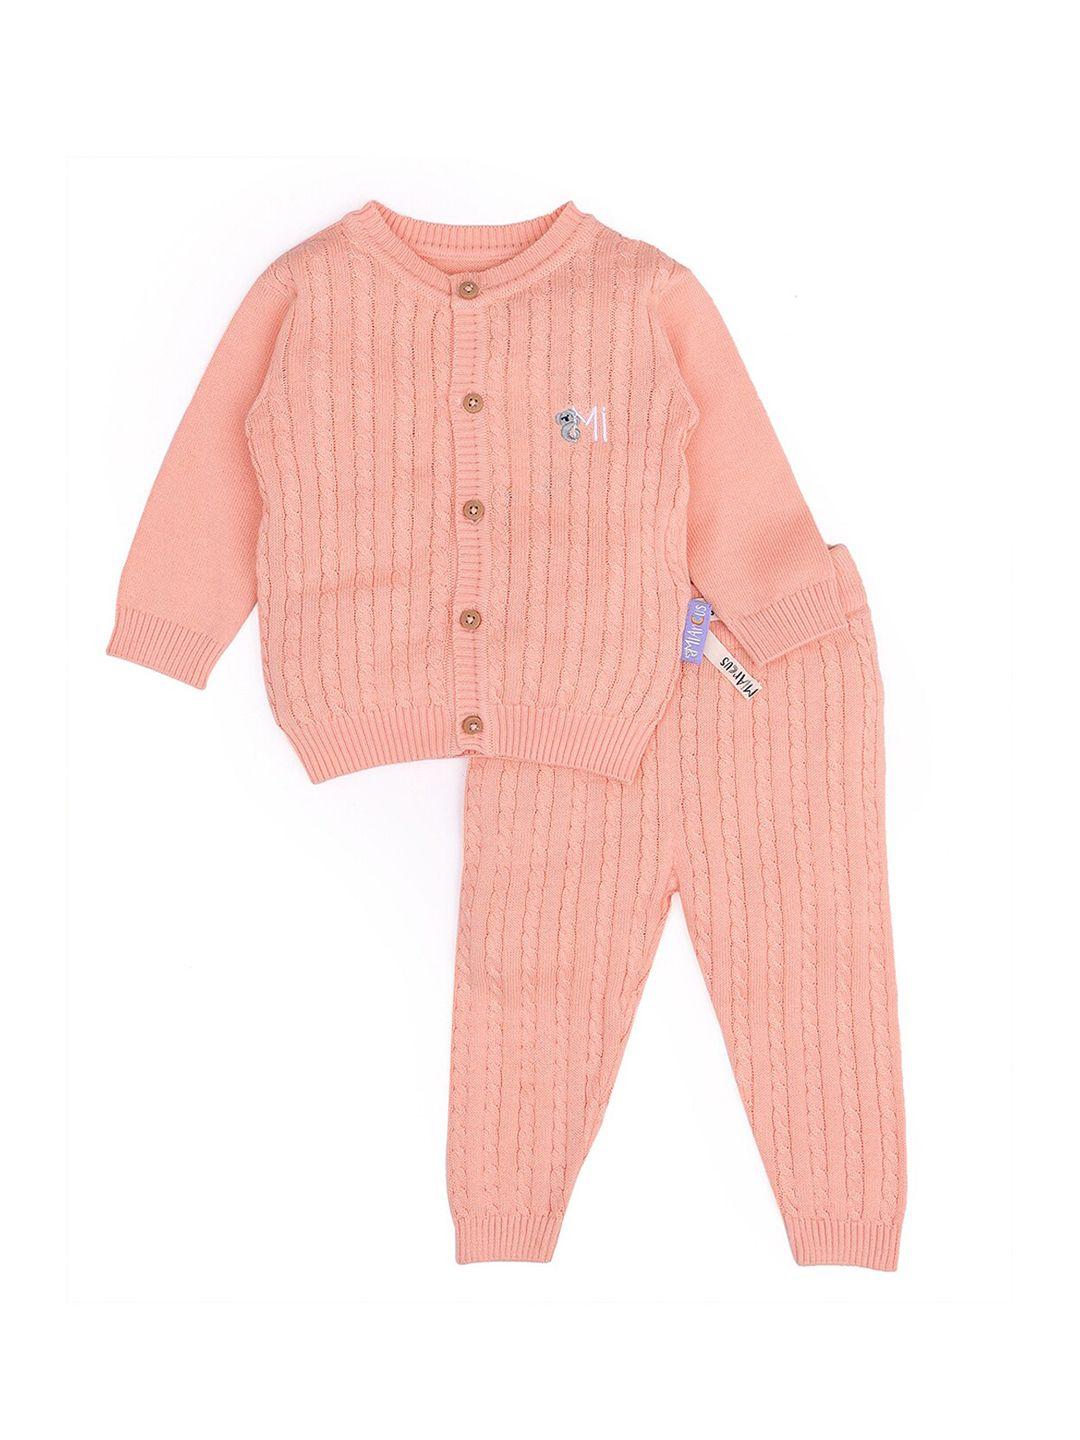 miarcus kids peach-coloured knitted cardigan with pyjamas